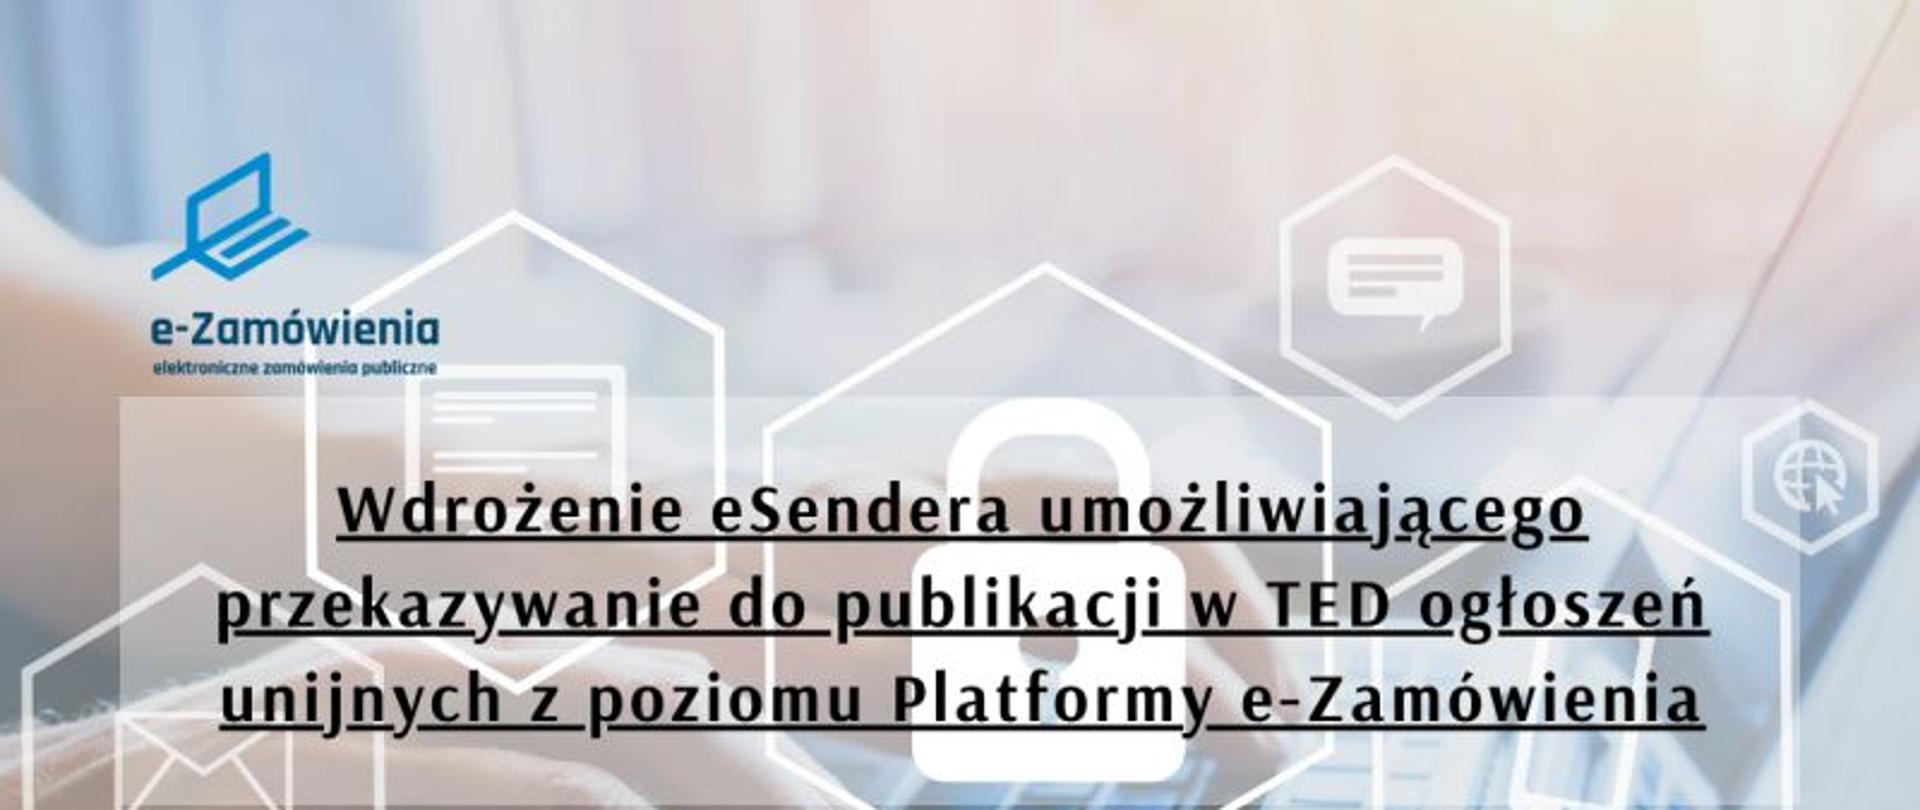 Wdrożenie eSendera umożliwiającego przekazywanie do publikacji w TED ogłoszeń unijnych z poziomu Platformy e-Zamówienia